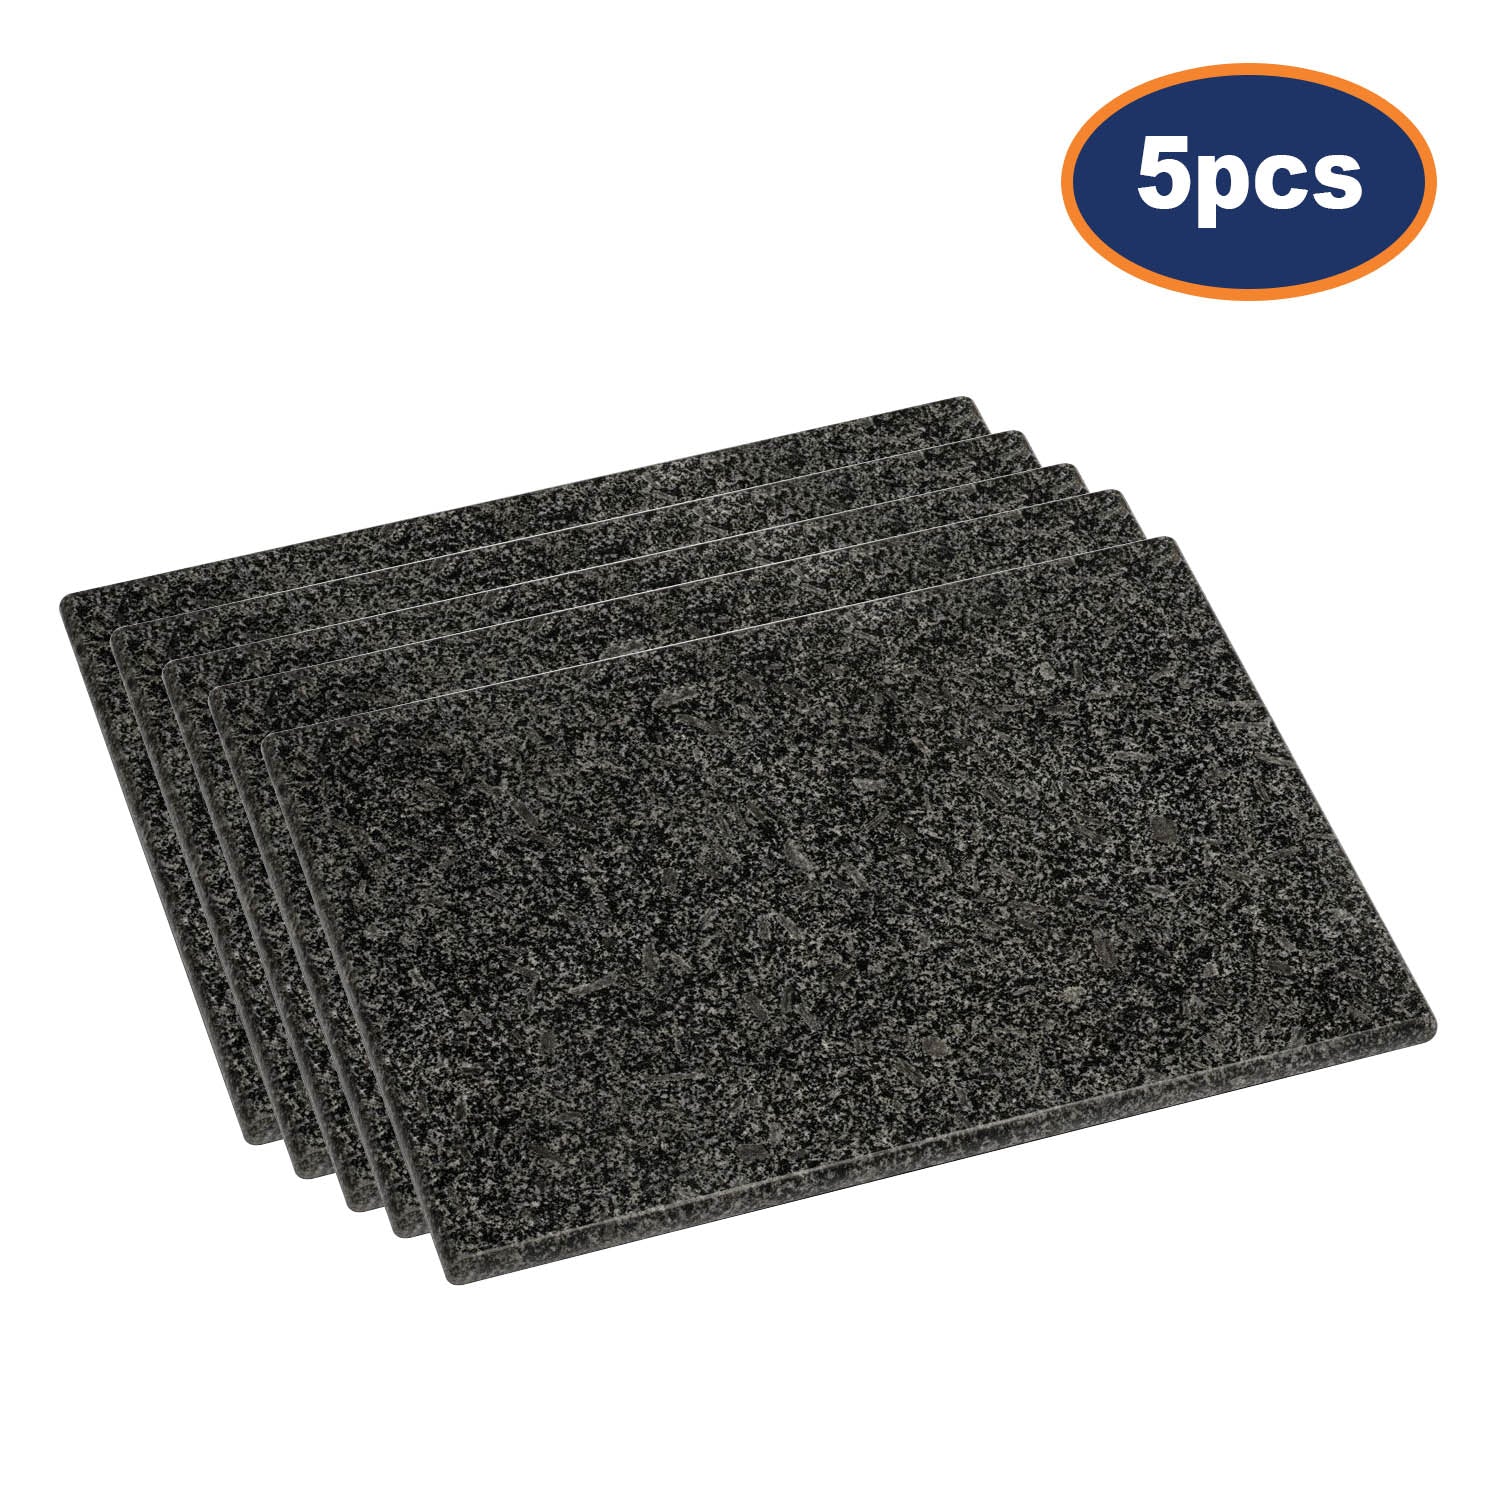 5pcs Black Speckled Granite Cutting  Board